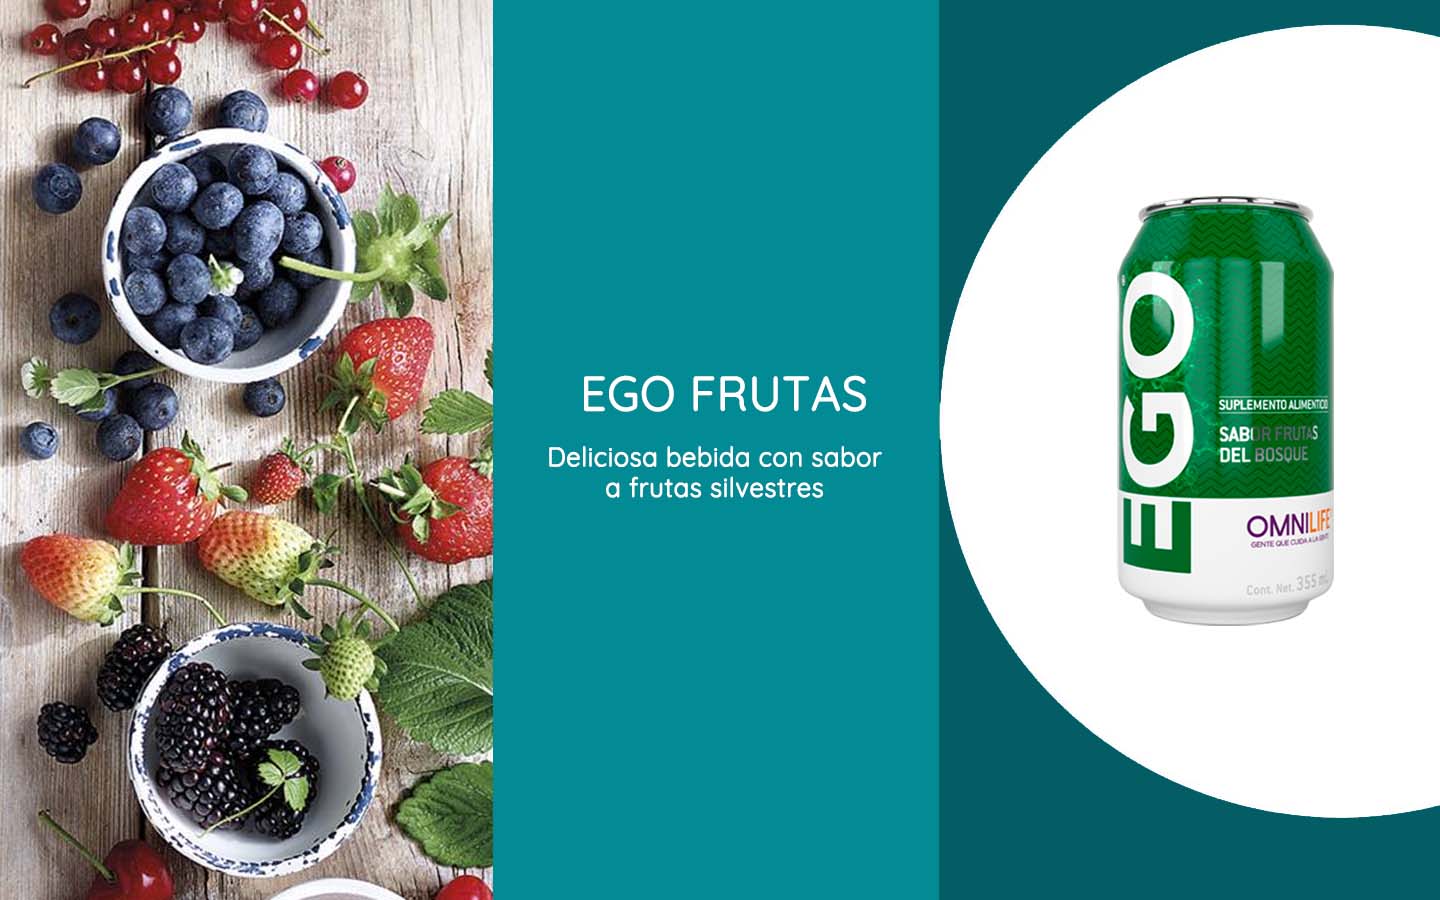 Ego Frutas de Omnilife tiene un delicioso sabor a frutas del bosque